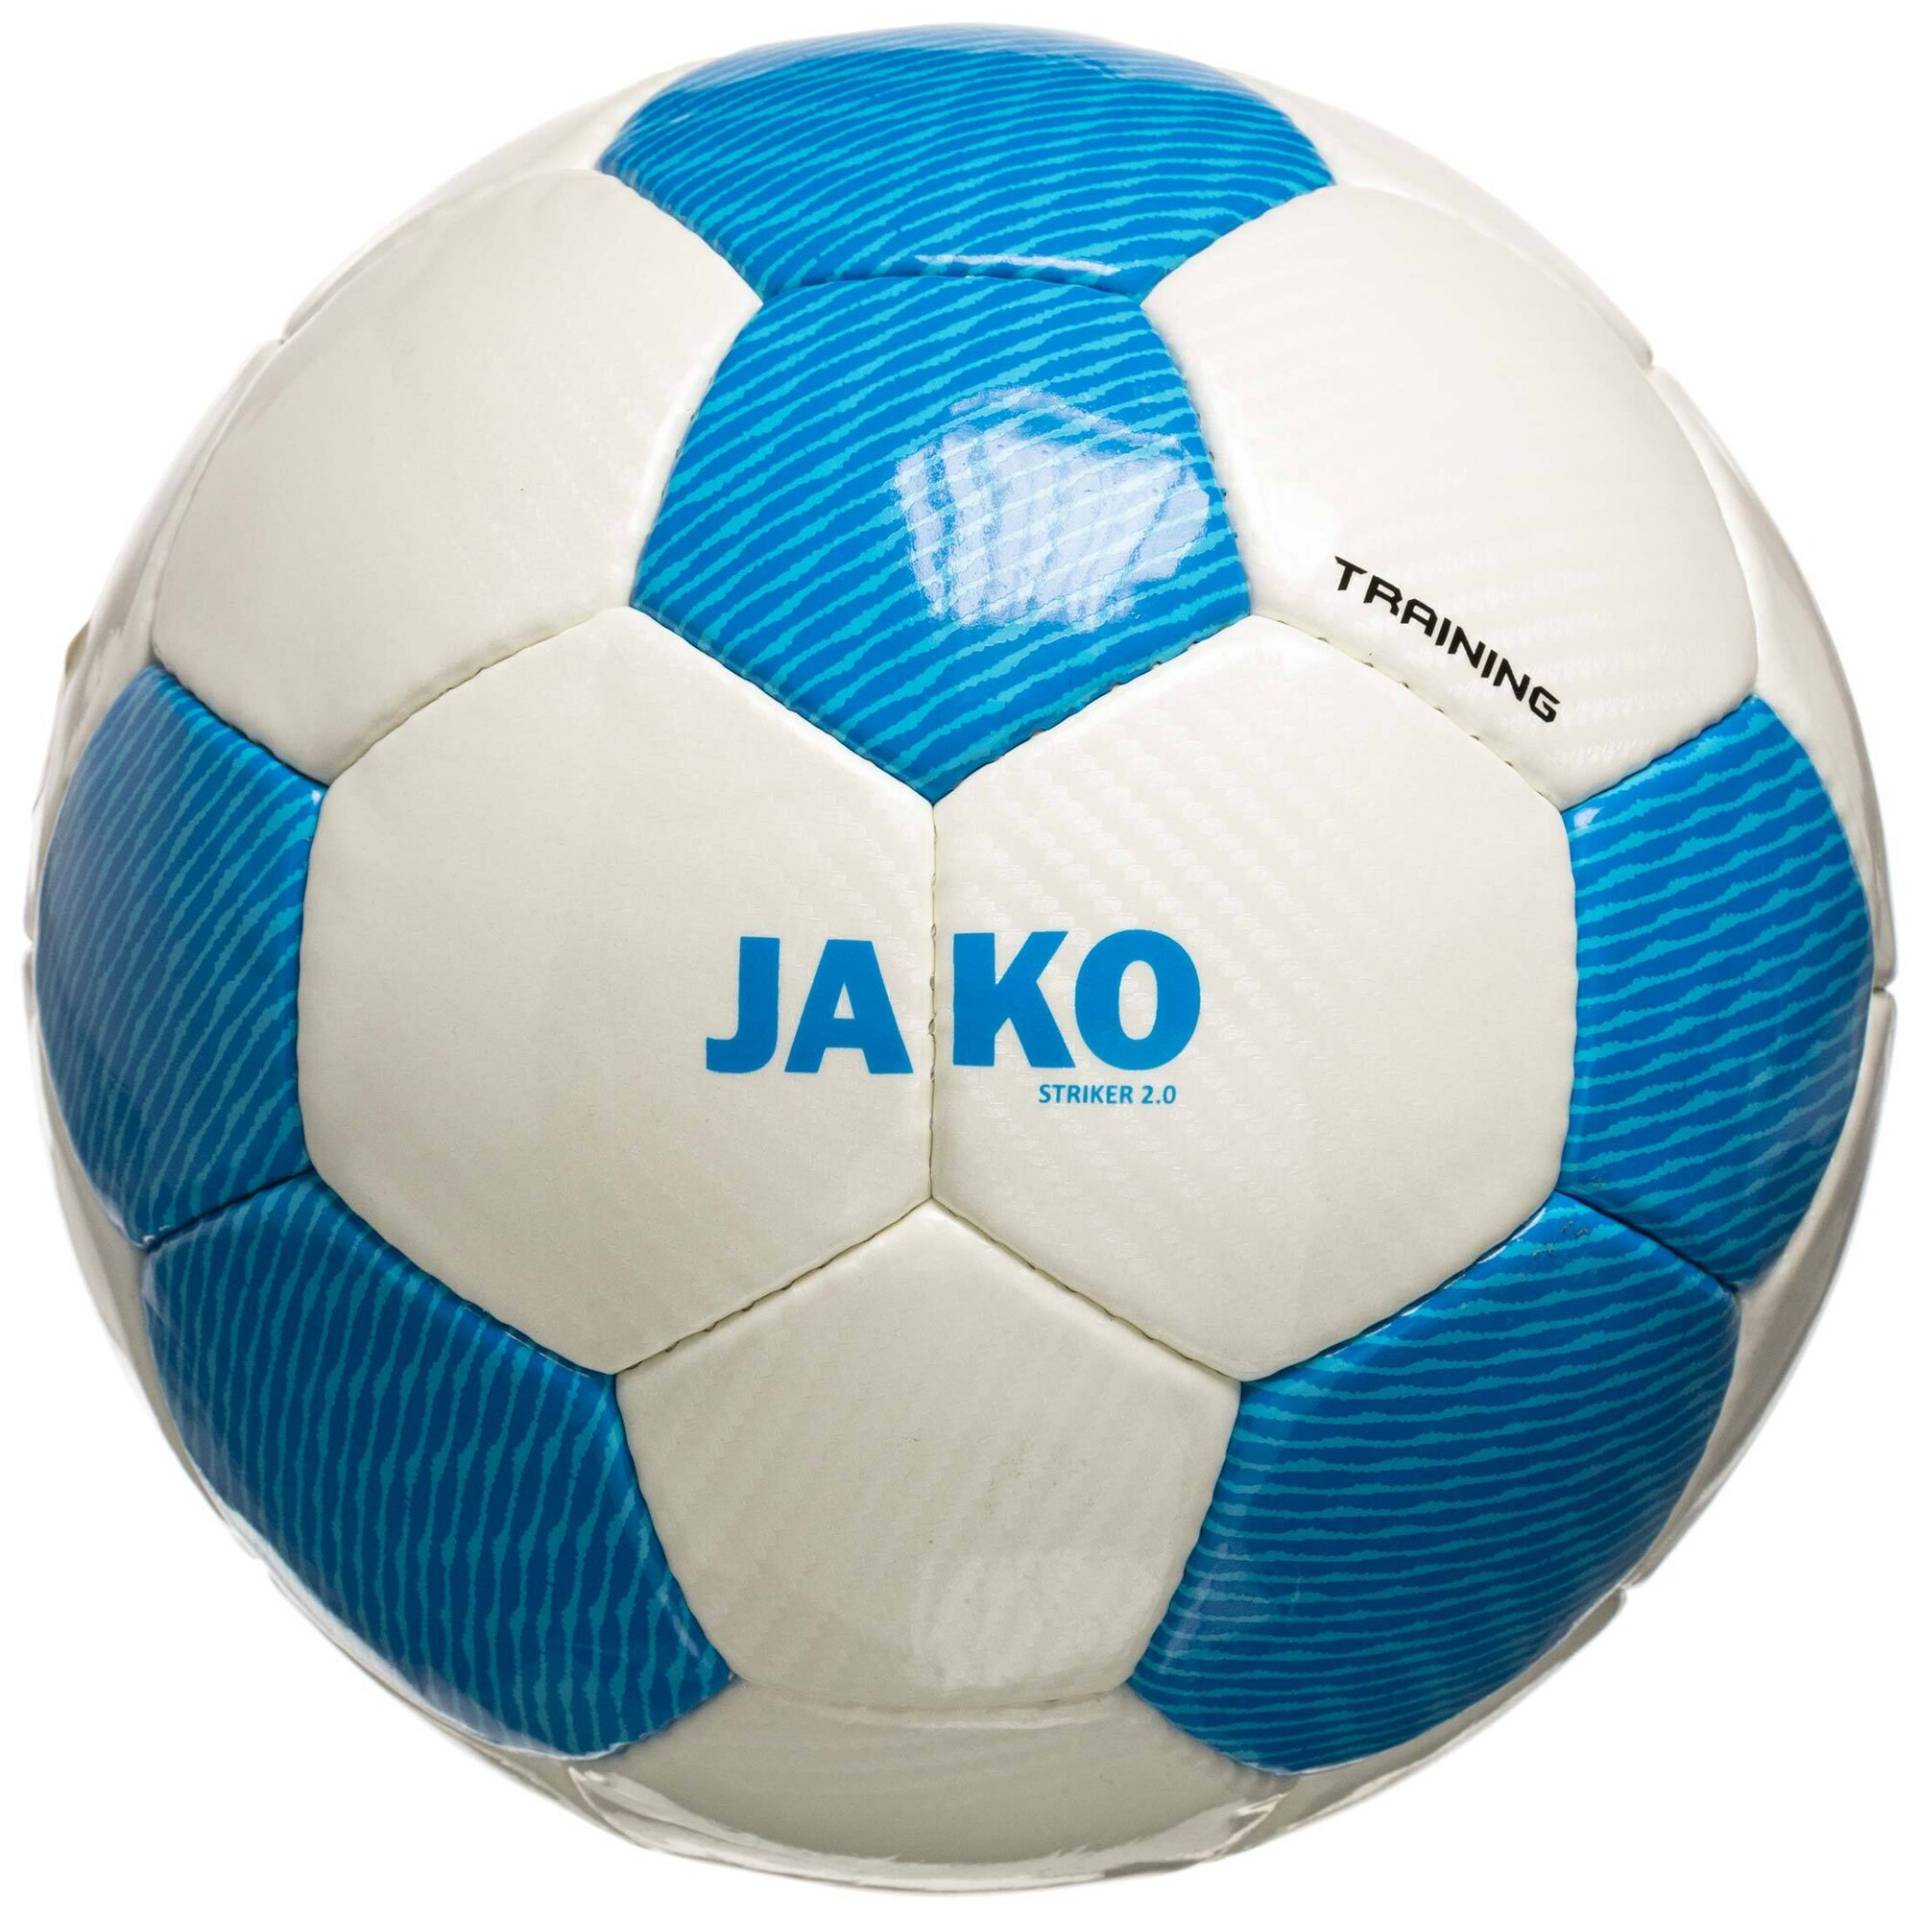 Ball 'Striker 2.0' von Jako